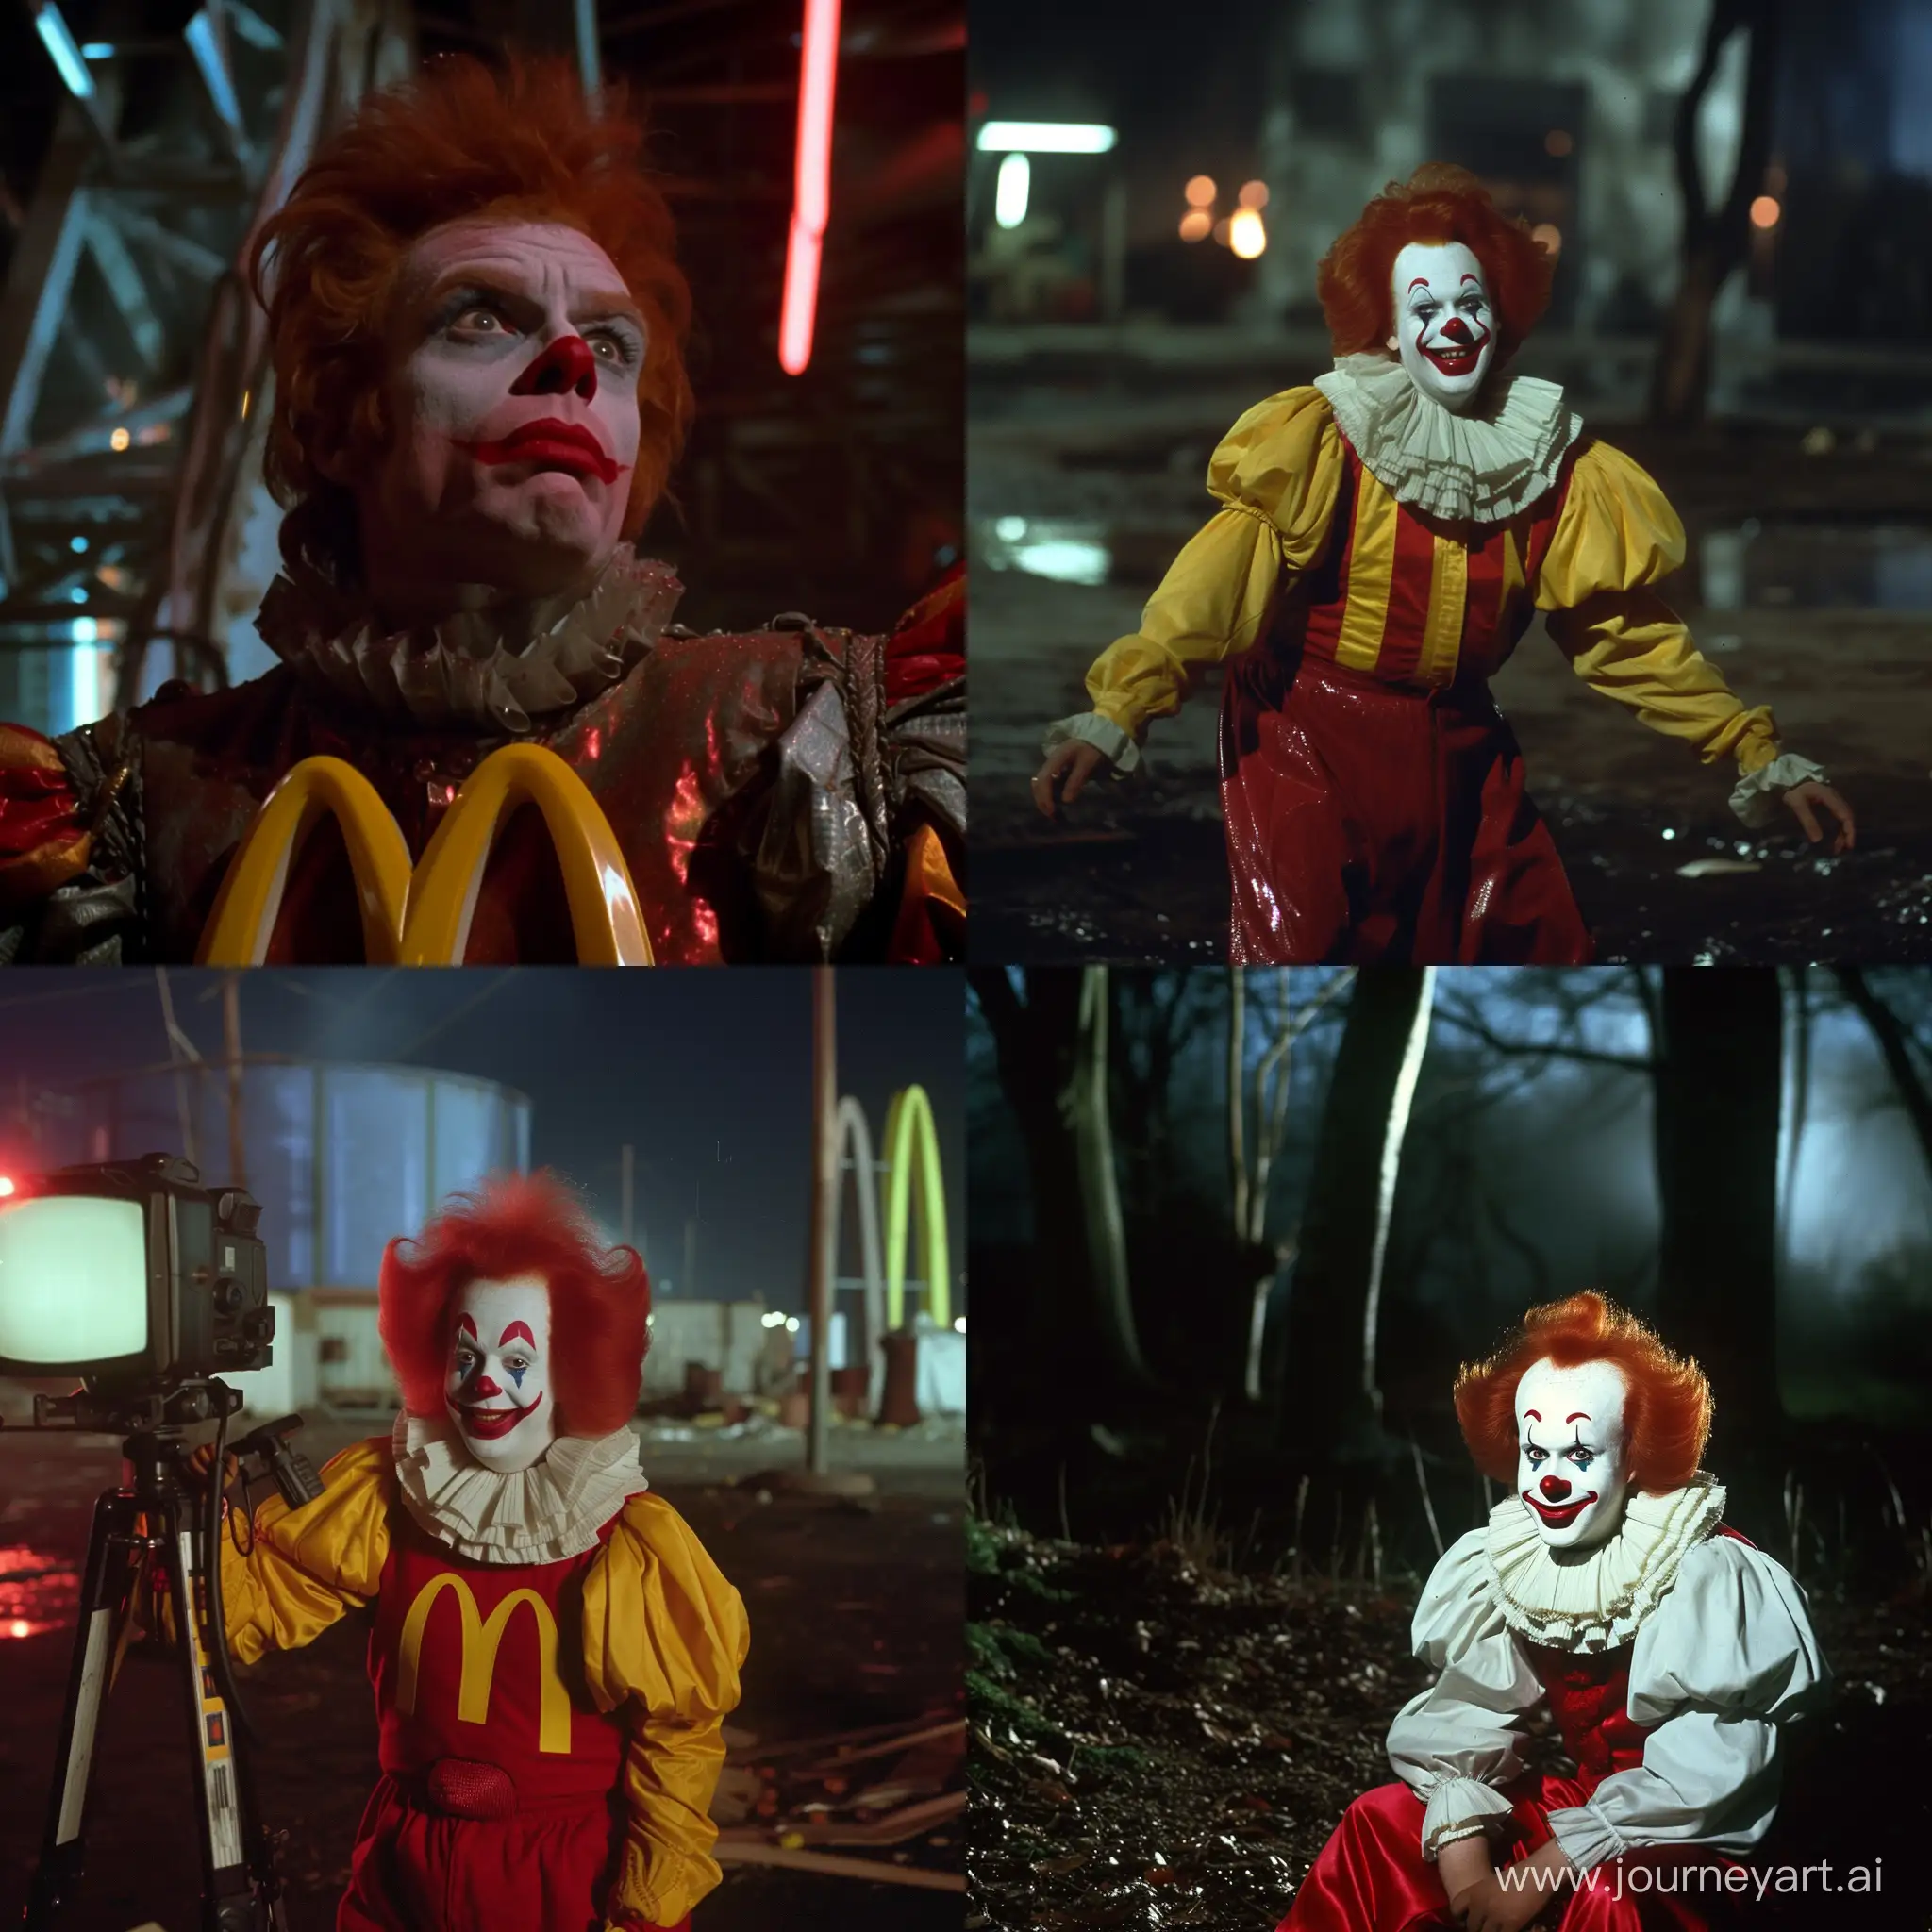 Ronald-McDonald-in-1980s-Dark-Fantasy-Film-Scene